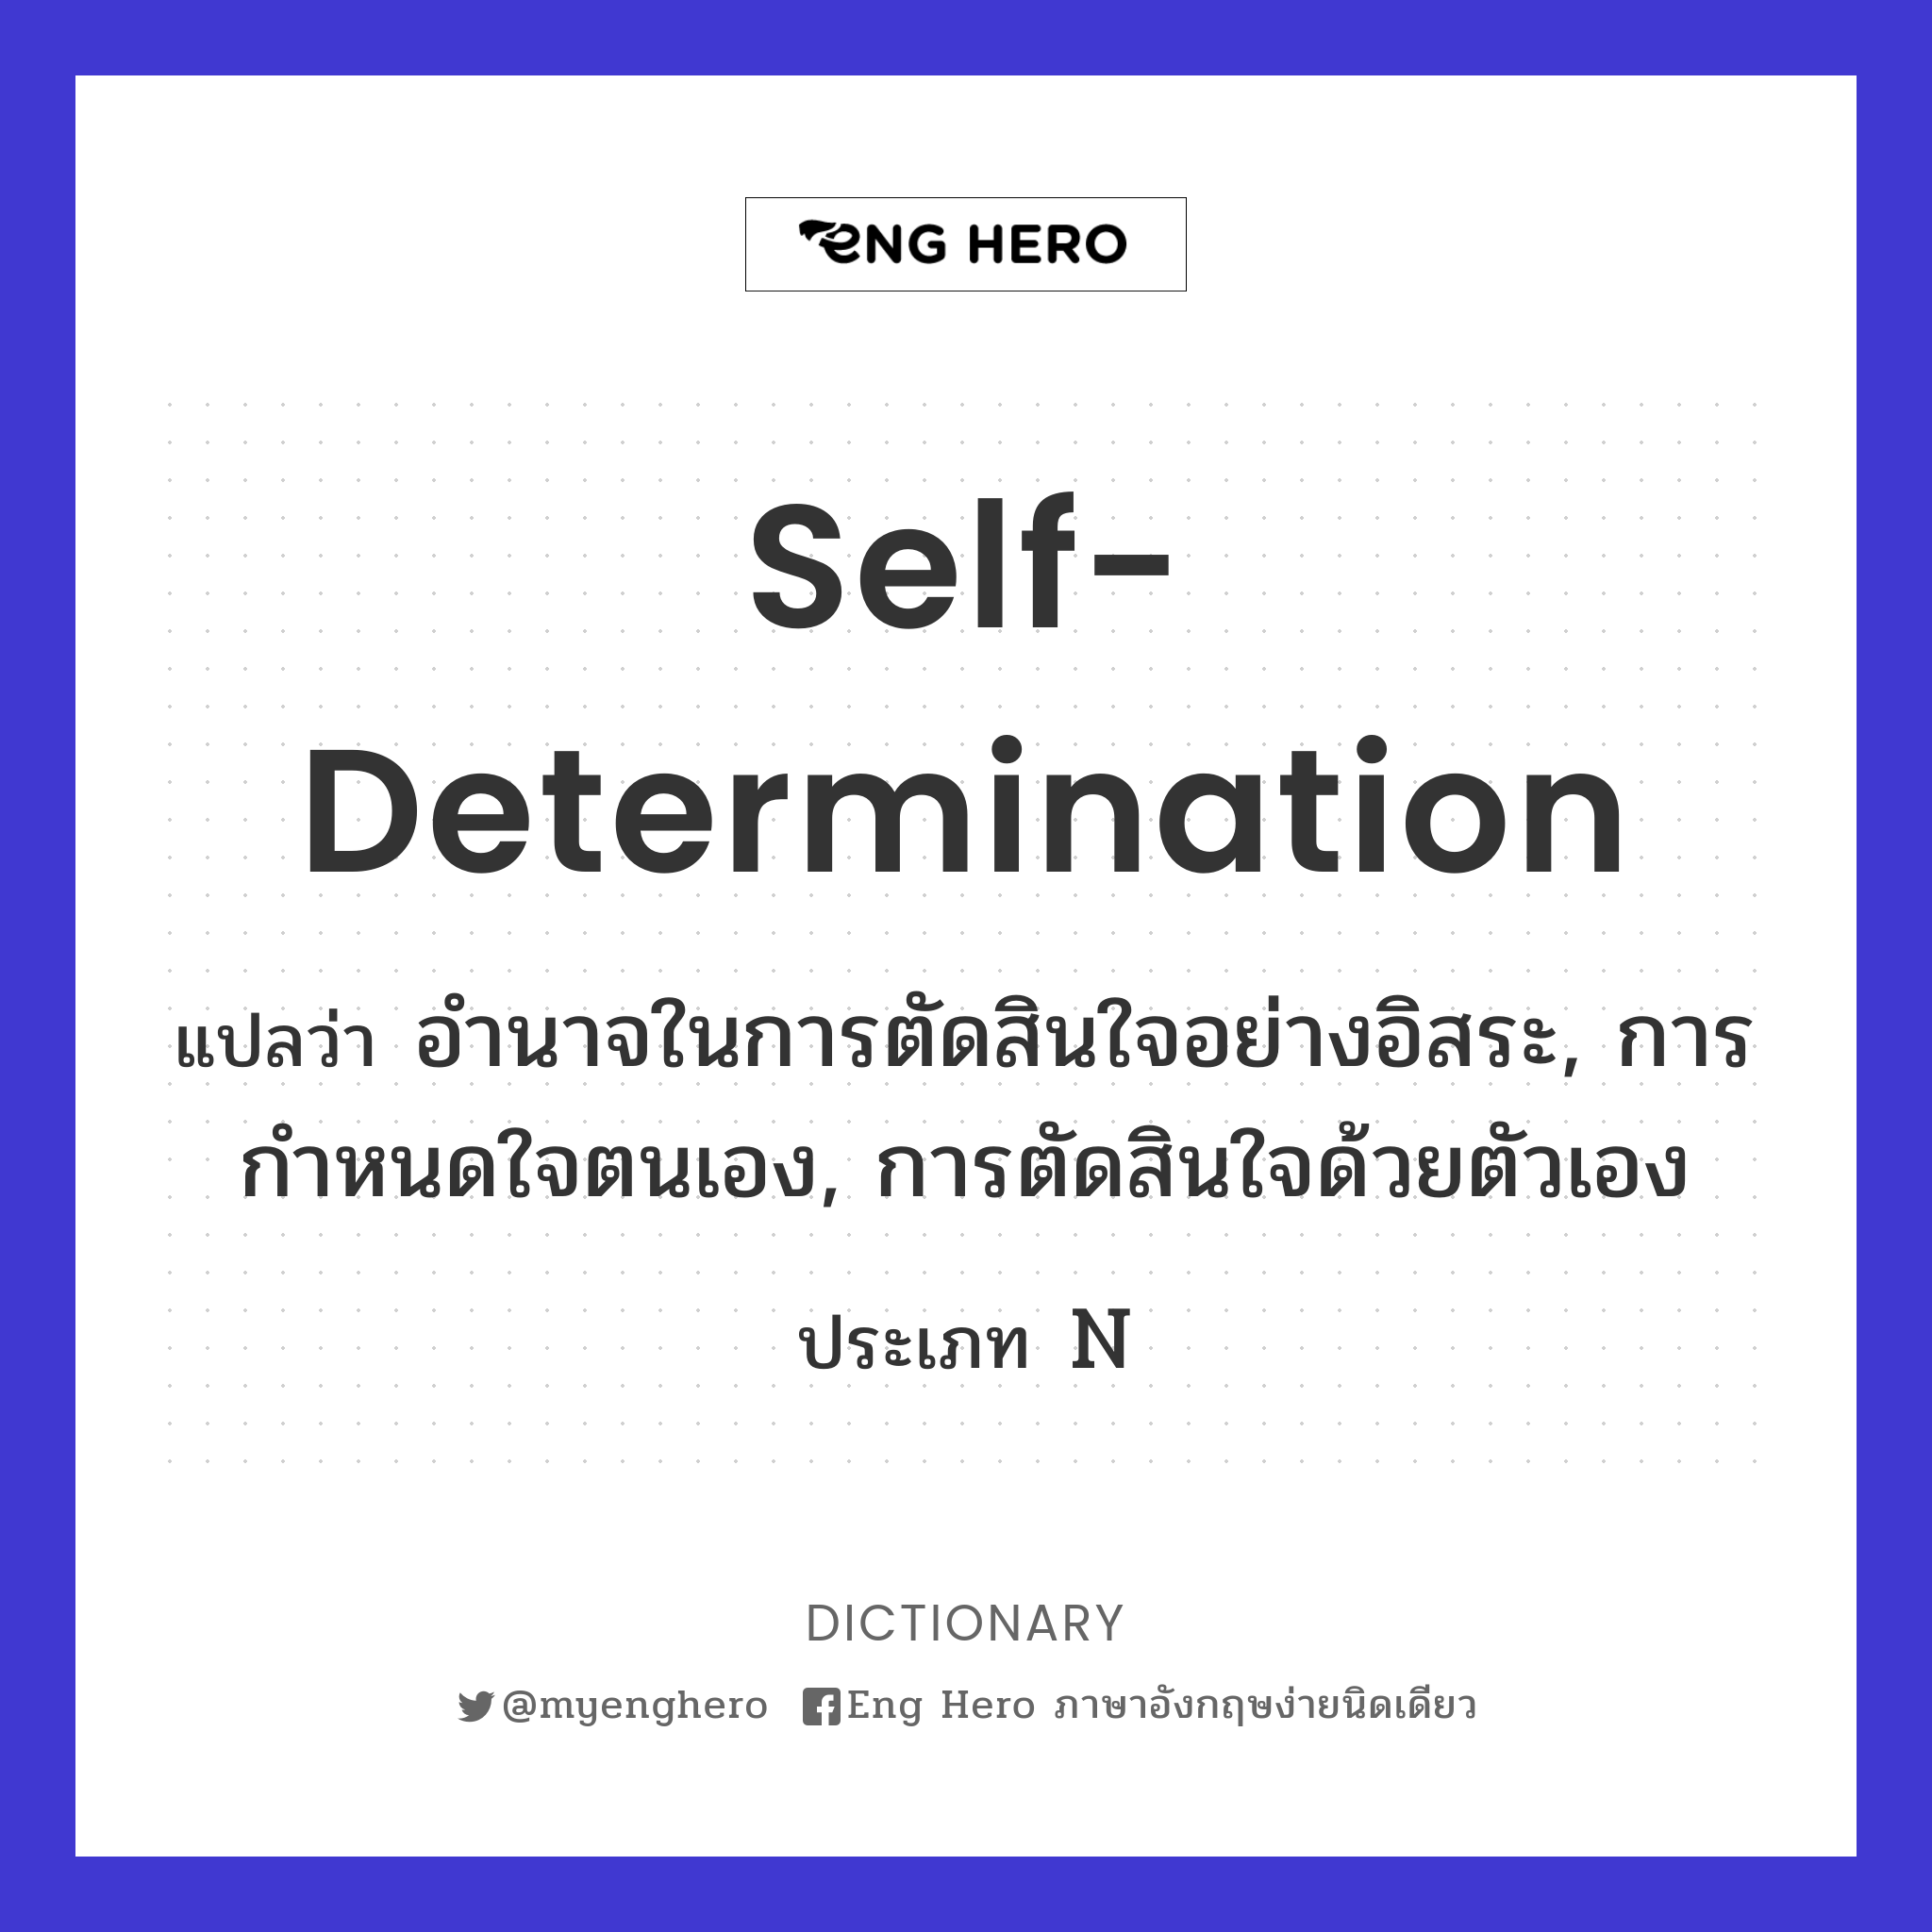 self-determination